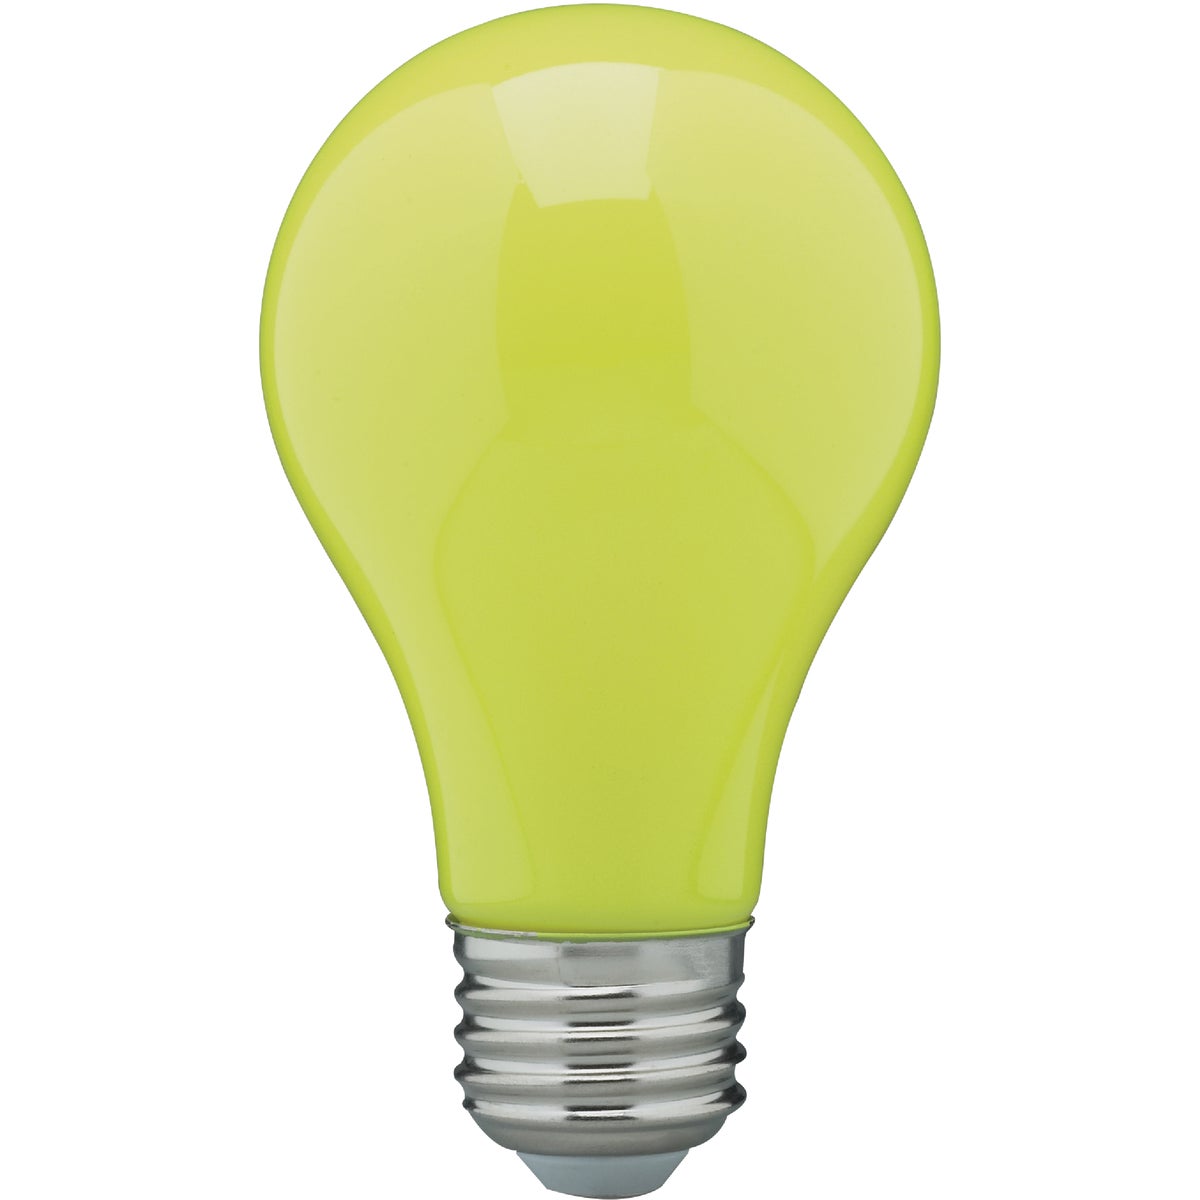 Item 560717, A19 LED (light emitting diode) medium base bulb with ceramic yellow finish